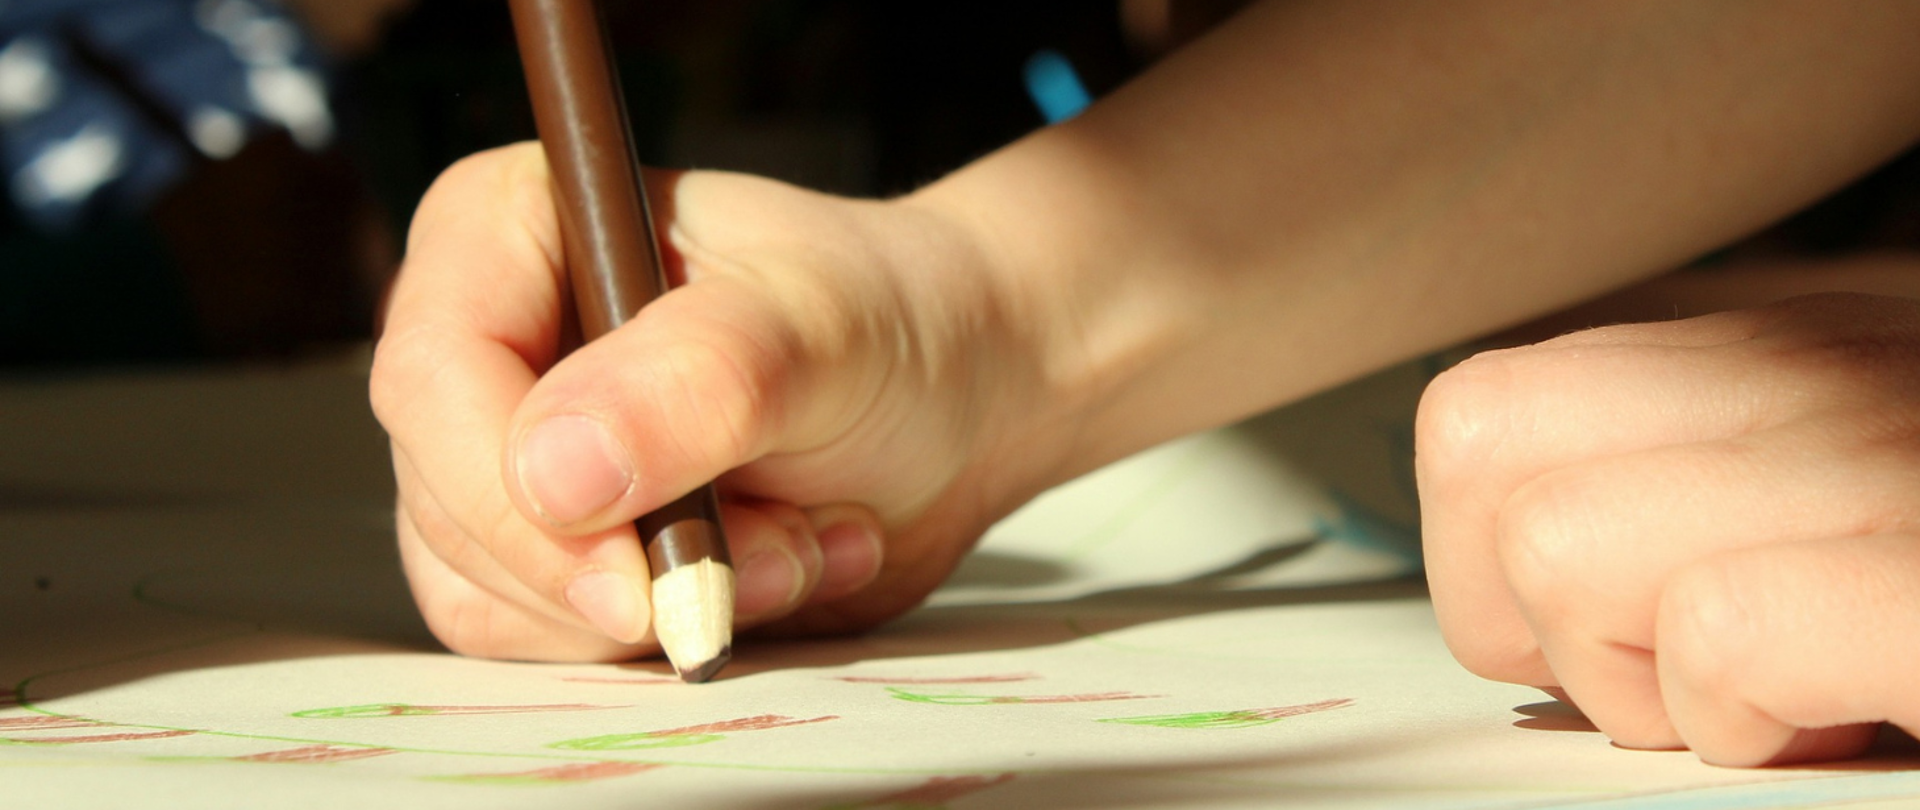 Grafika przedstawia dłonie dziecka trzymającego kredkę i rysującego obrazek.